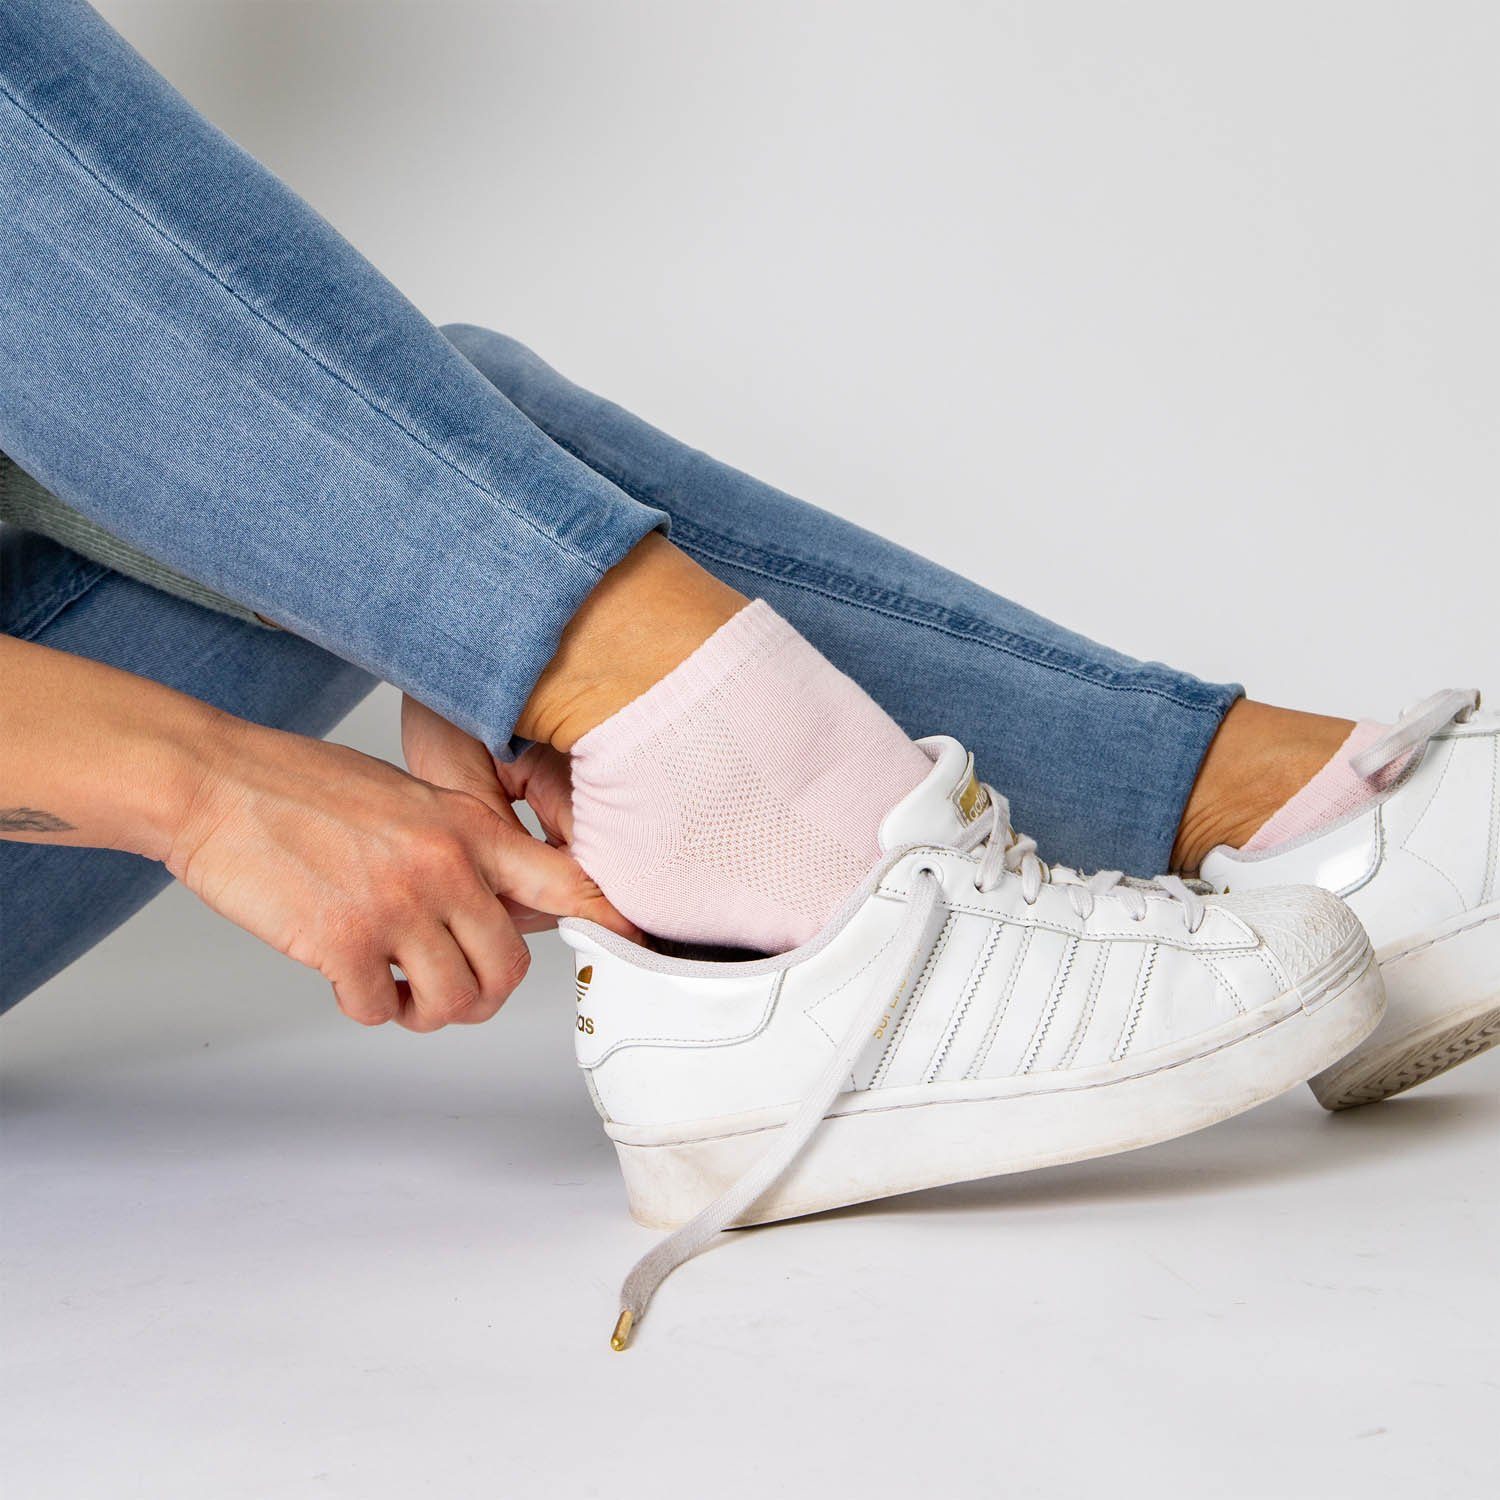 (Modell: OCCULTO Damen (10-Paar) Sneaker Diana) Wht Sneakersocken Socken 10er Pack